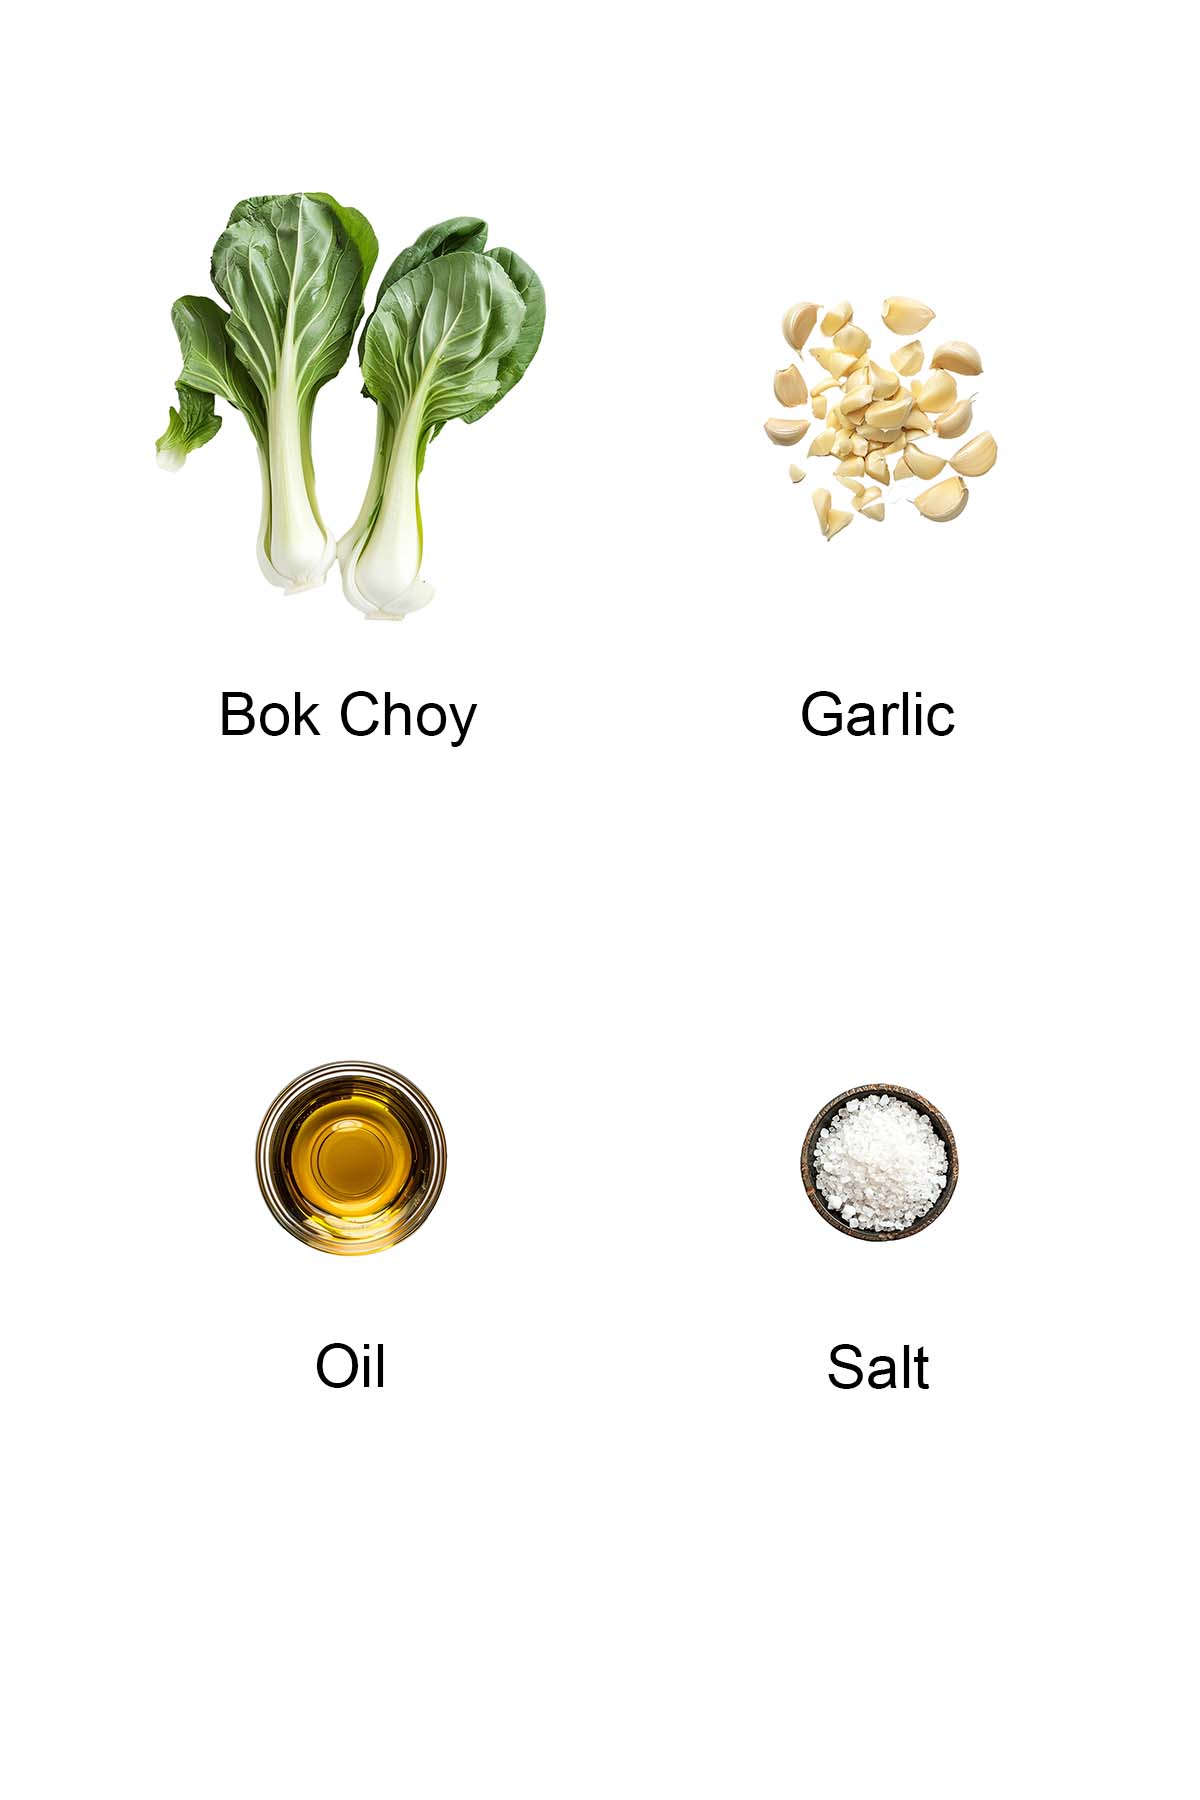 Ingredients for garlic bok choy. 